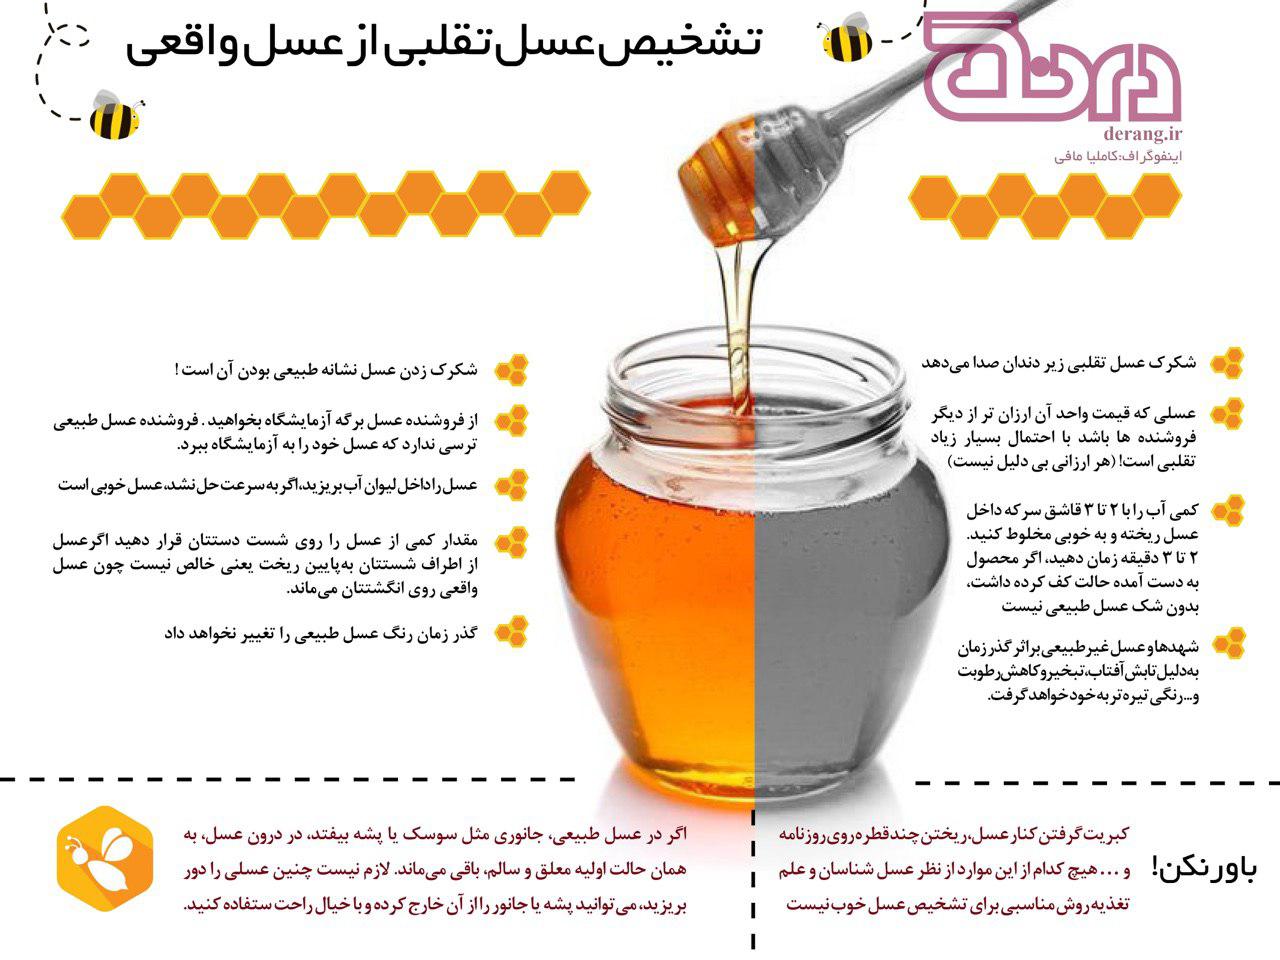 روش شناخت عسل طبیعی از تقلبی
